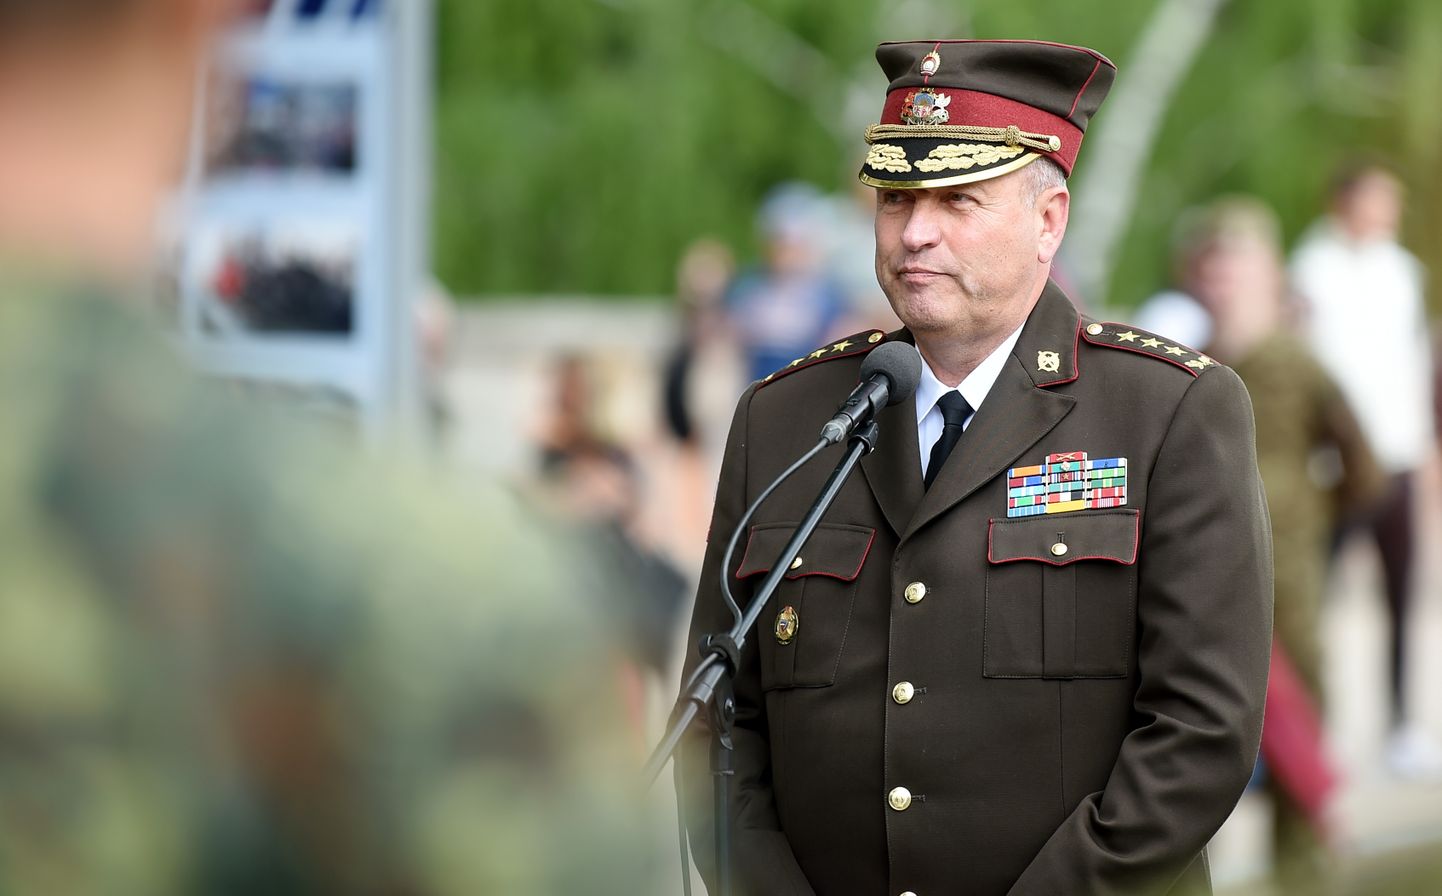 Nacionālo bruņoto spēku komandieris ģenerālleitnants Leonīds Kalniņš piedalās NATO paplašinātās klātbūtnes kaujas grupas Latvijā 5. gadadienai veltītās foto izstādes "NATO paplašinātās klātbūtnes kaujas grupa Latvijā - 5 gadi" atklāšanas pasākumā pie Brīvības pieminekļa.